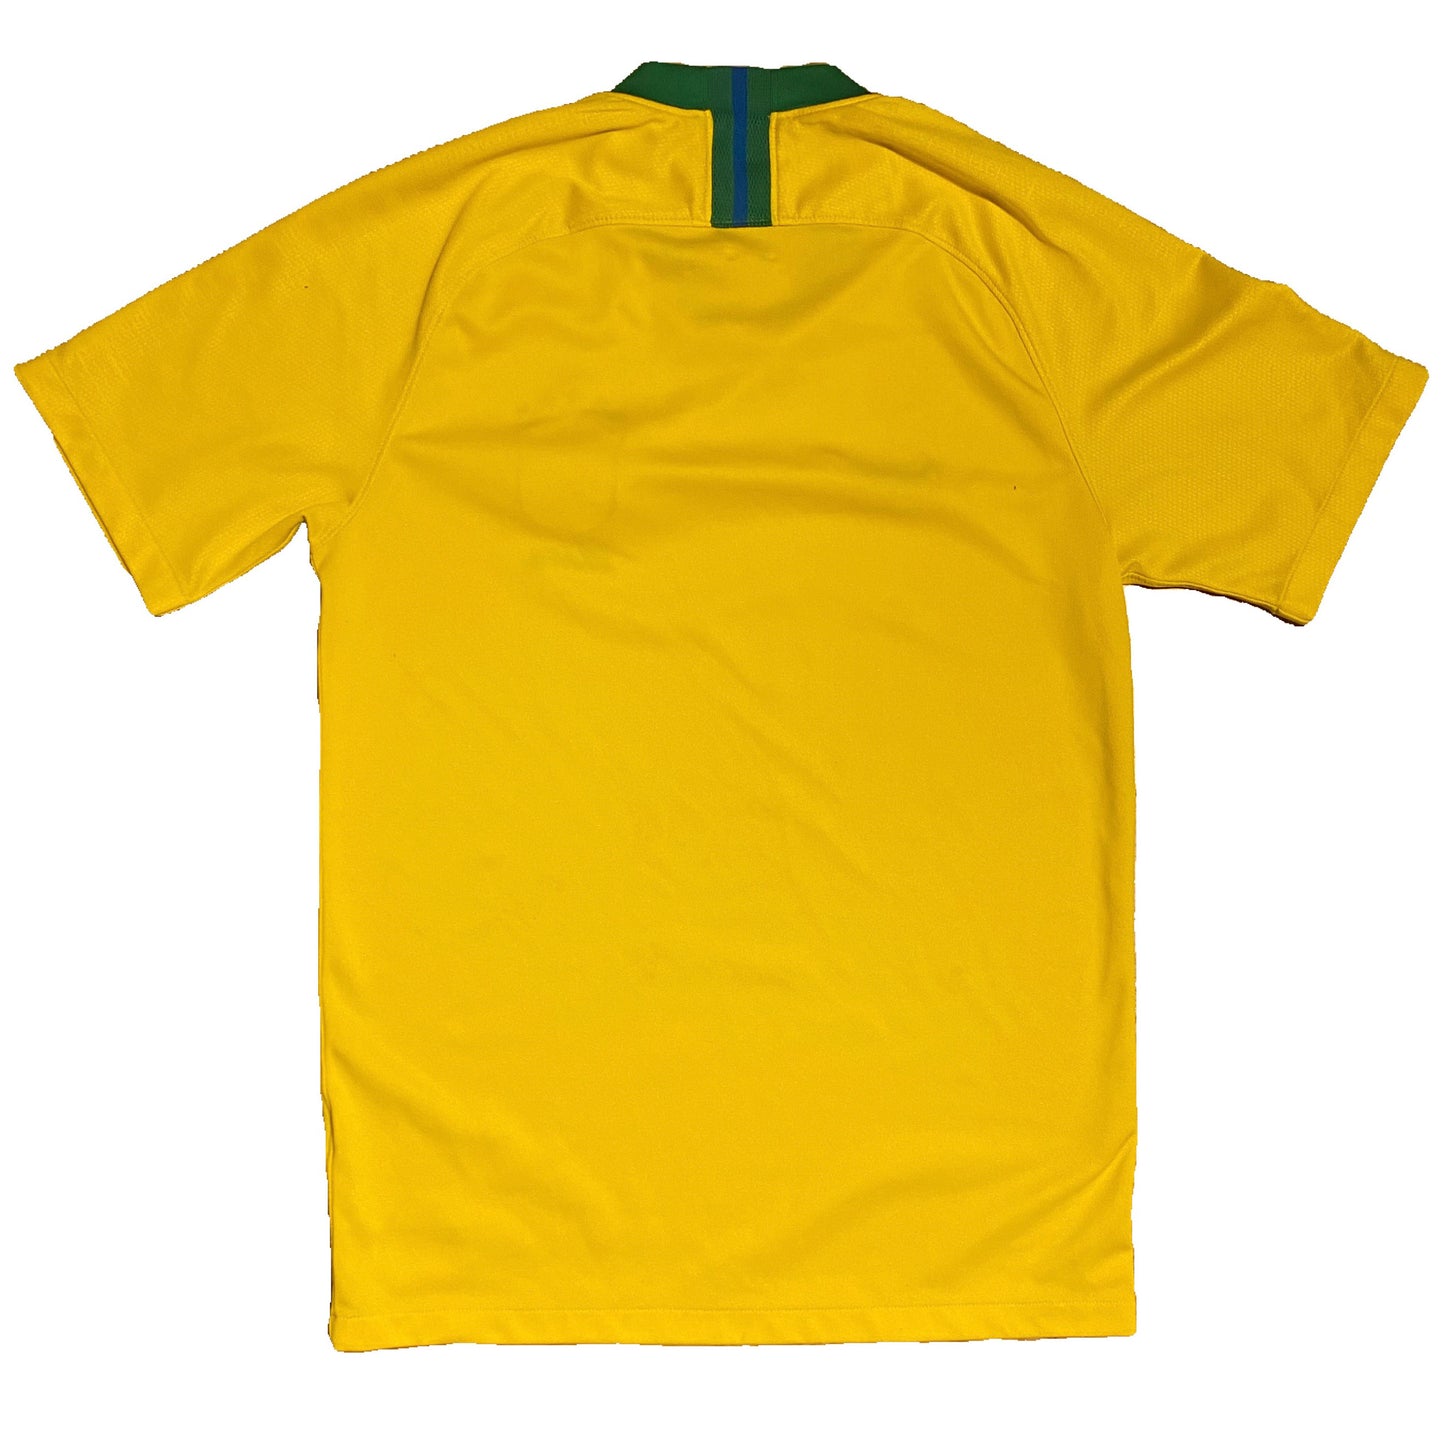 Brazil 2018 FIFA World Cup men’s football home shirt